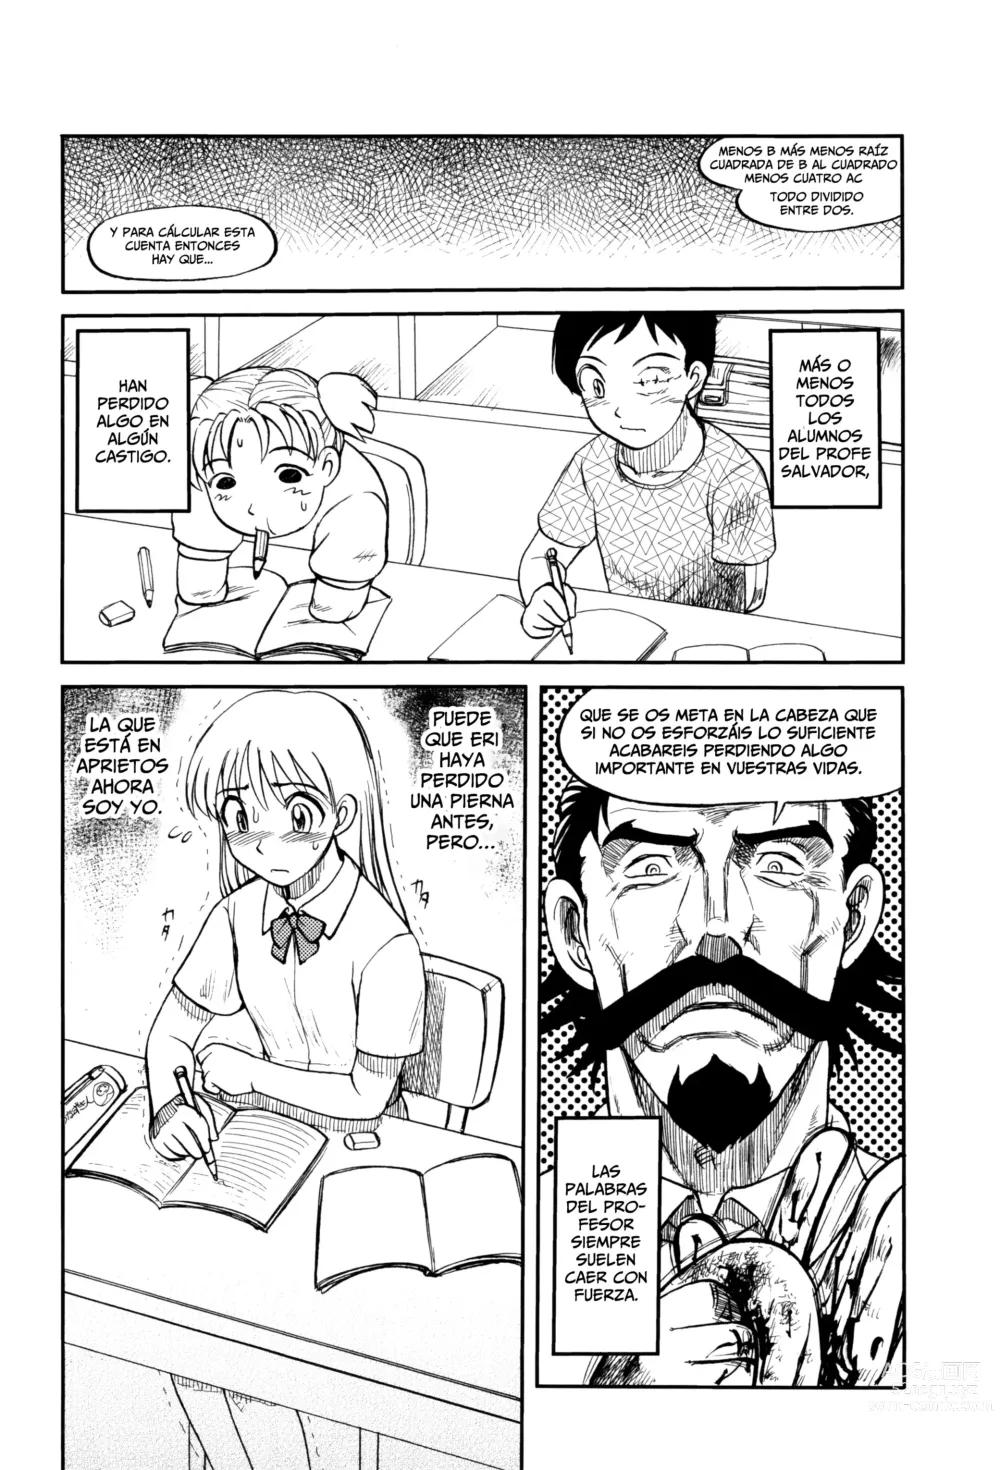 Page 8 of manga El Profesor Salvador Dice Que La Letra Con Sangre Entra